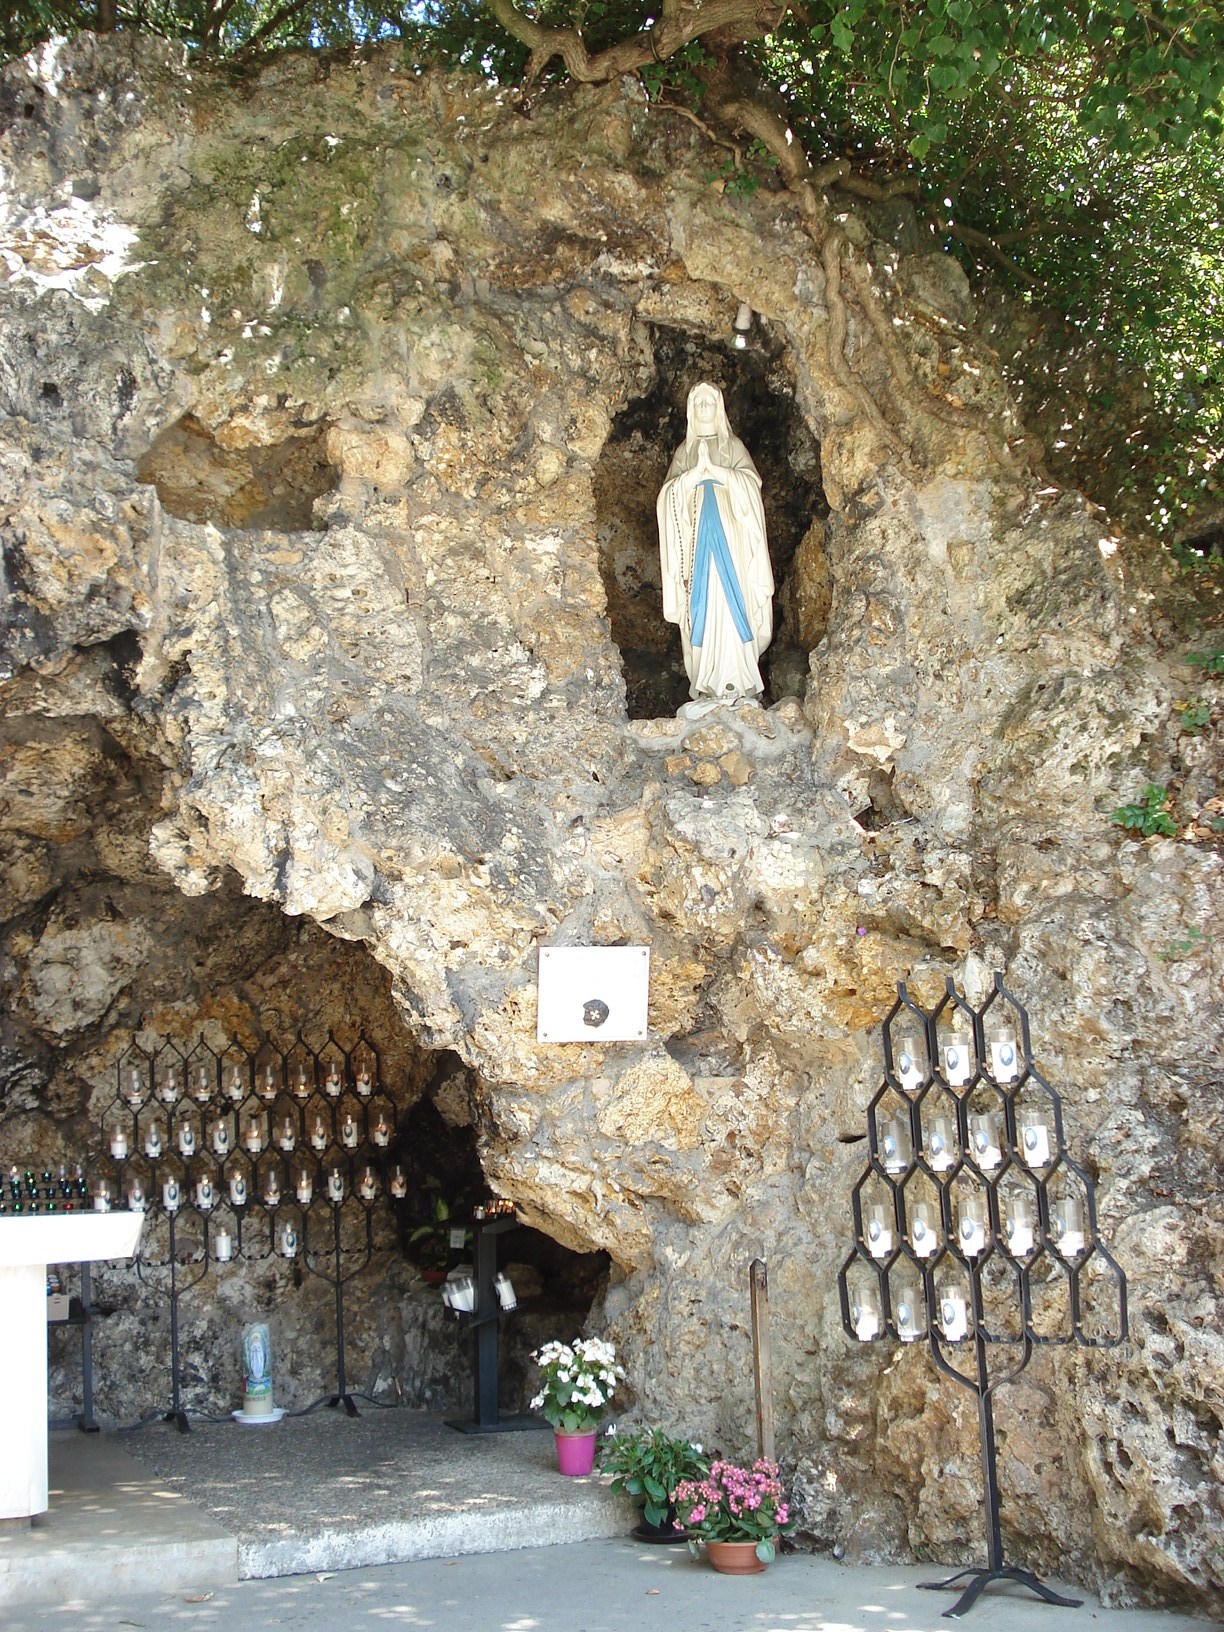 The sanctuary - Sanctuaire Sainte Bernadette Soubirous